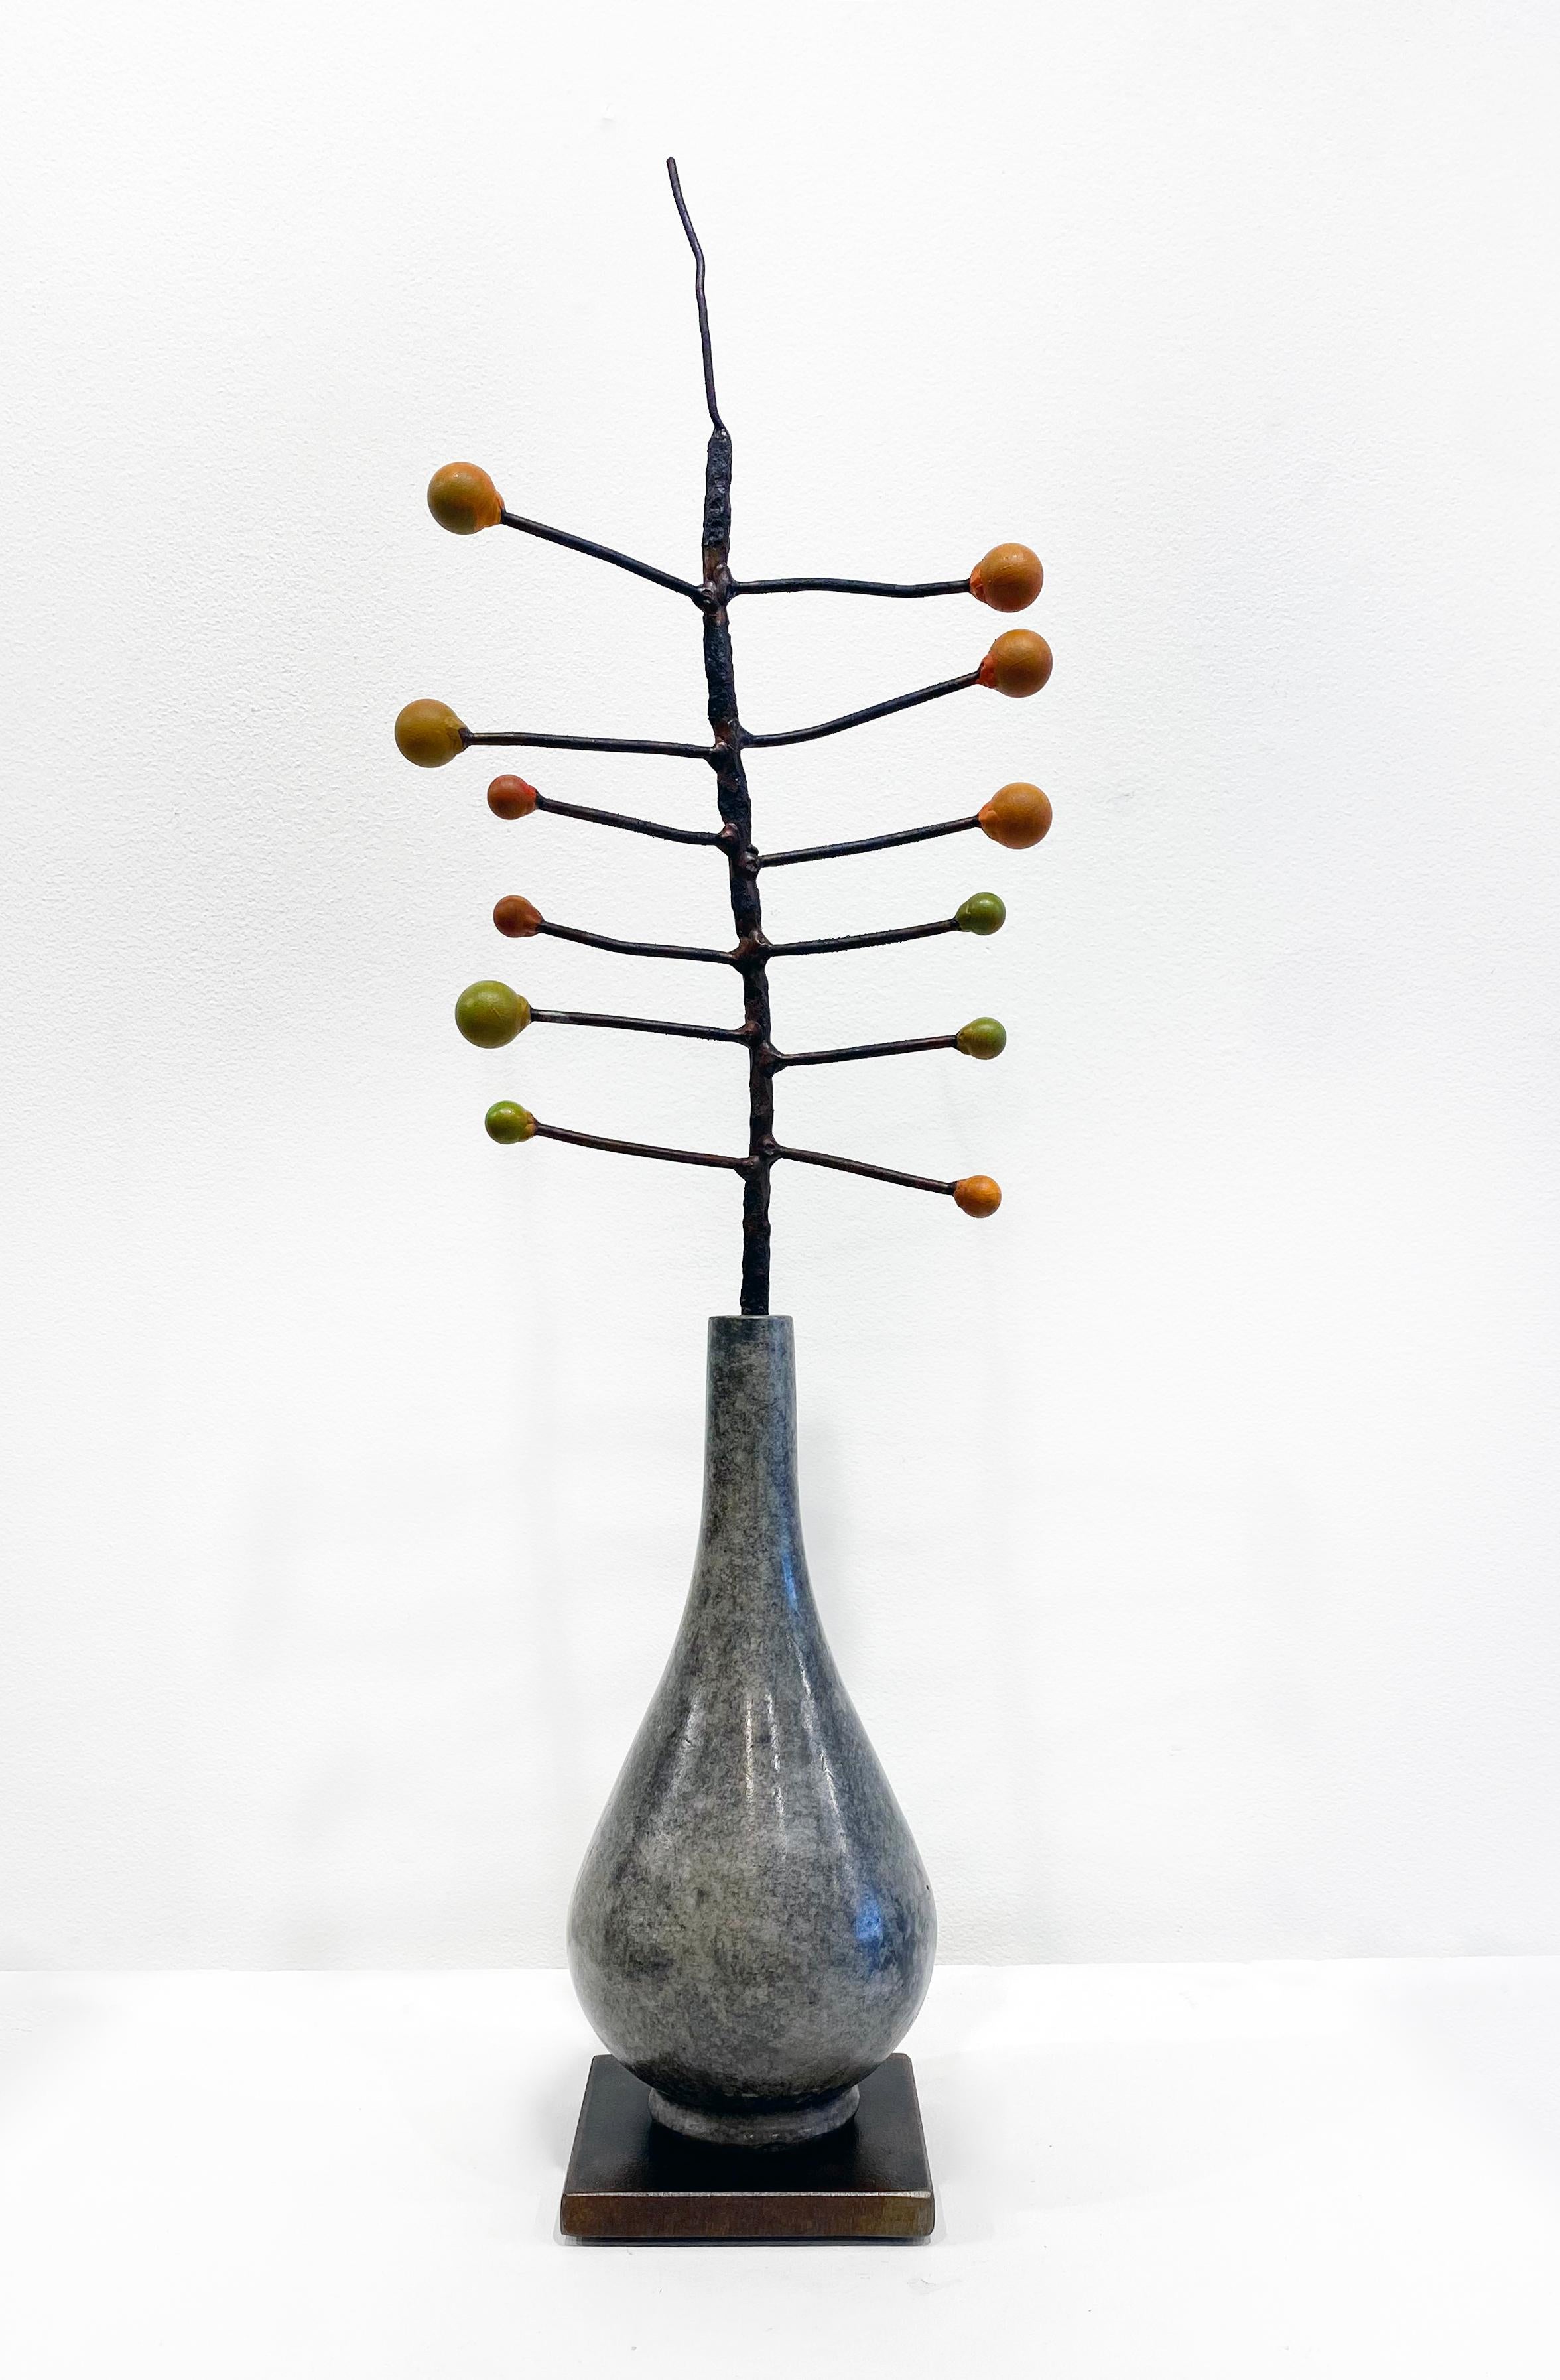 saatgut" von David Kimball Anderson, 2022. Bronze, Stahl und Farbe, 24 x 8 x 6 Zoll. Diese Skulptur zeigt eine klassische runde Vase aus Bronze, die mit einer grauen Patina überzogen ist. Es besteht aus einer Reihe von Bronzezweigen mit bunten, grün